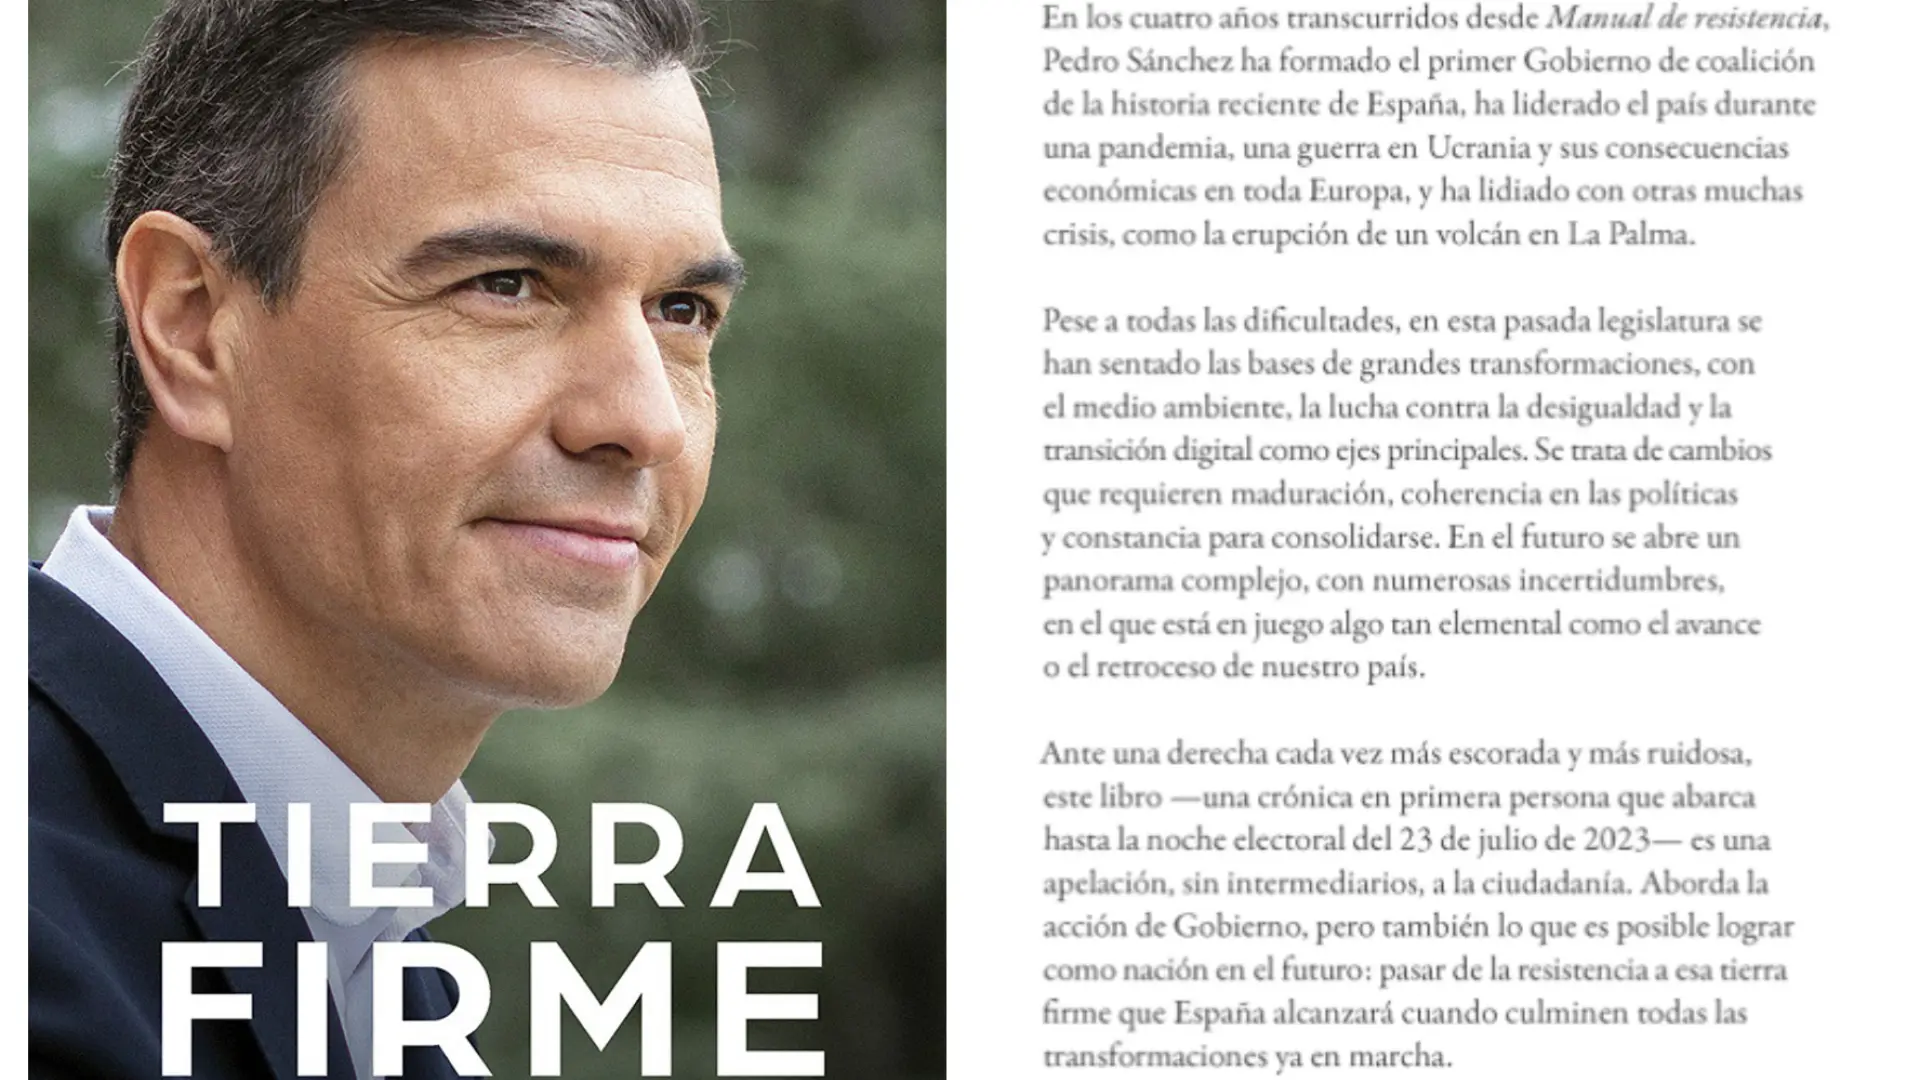 De qué habla Pedro Sánchez en su nuevo libro, “Tierra Firme”?